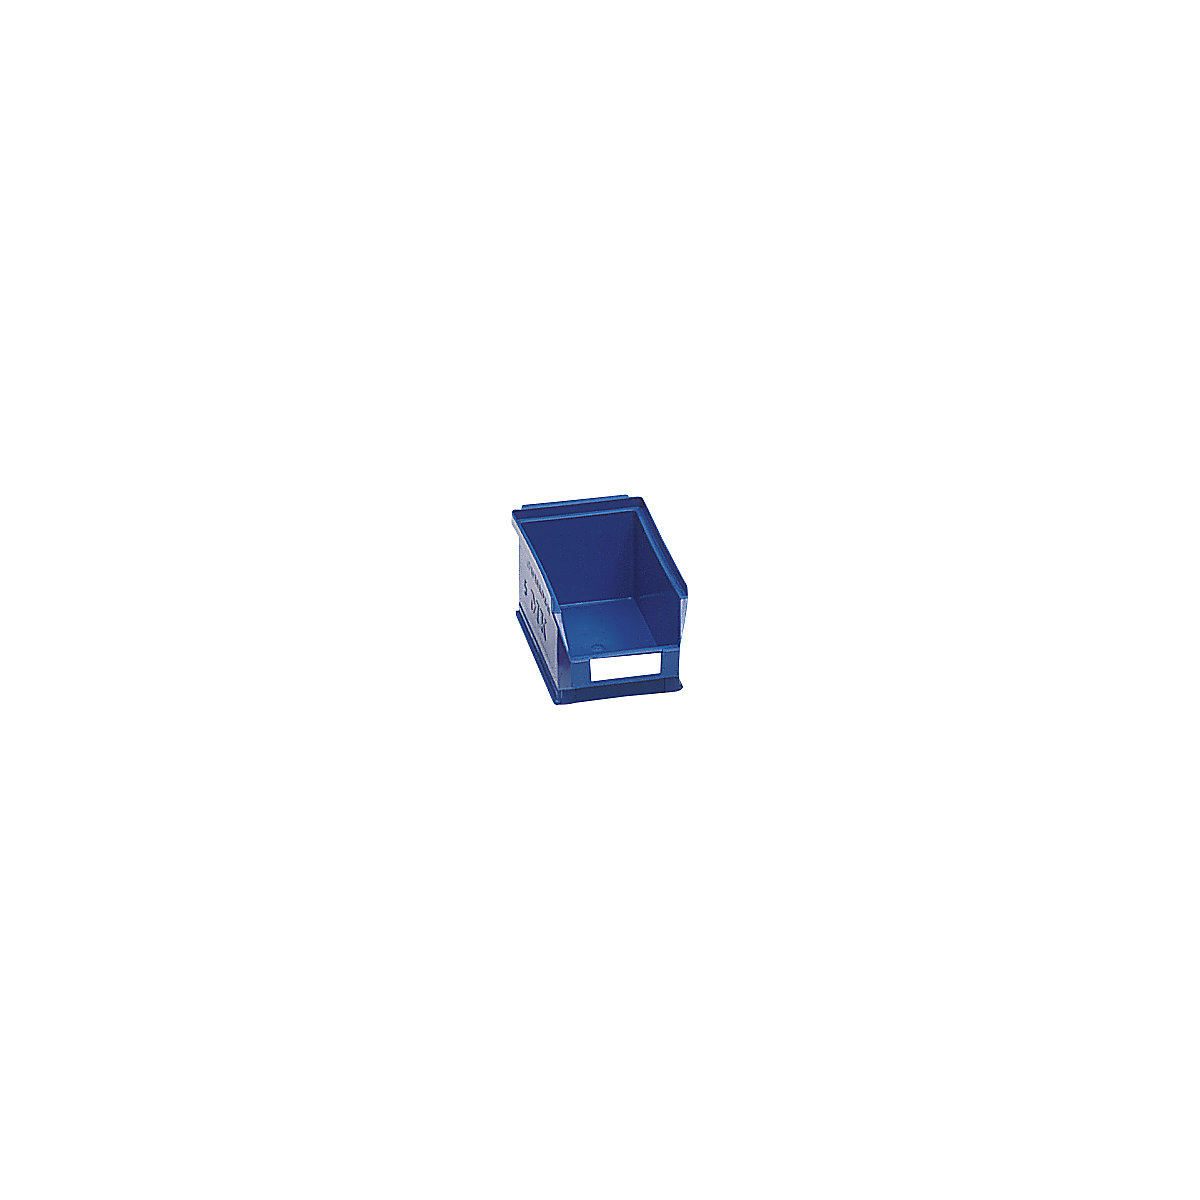 Prepravka s viditeľným obsahom z polyetylénu – mauser, d x š x v 160 x 100 x 75 mm, modrá, OJ 25 ks-7